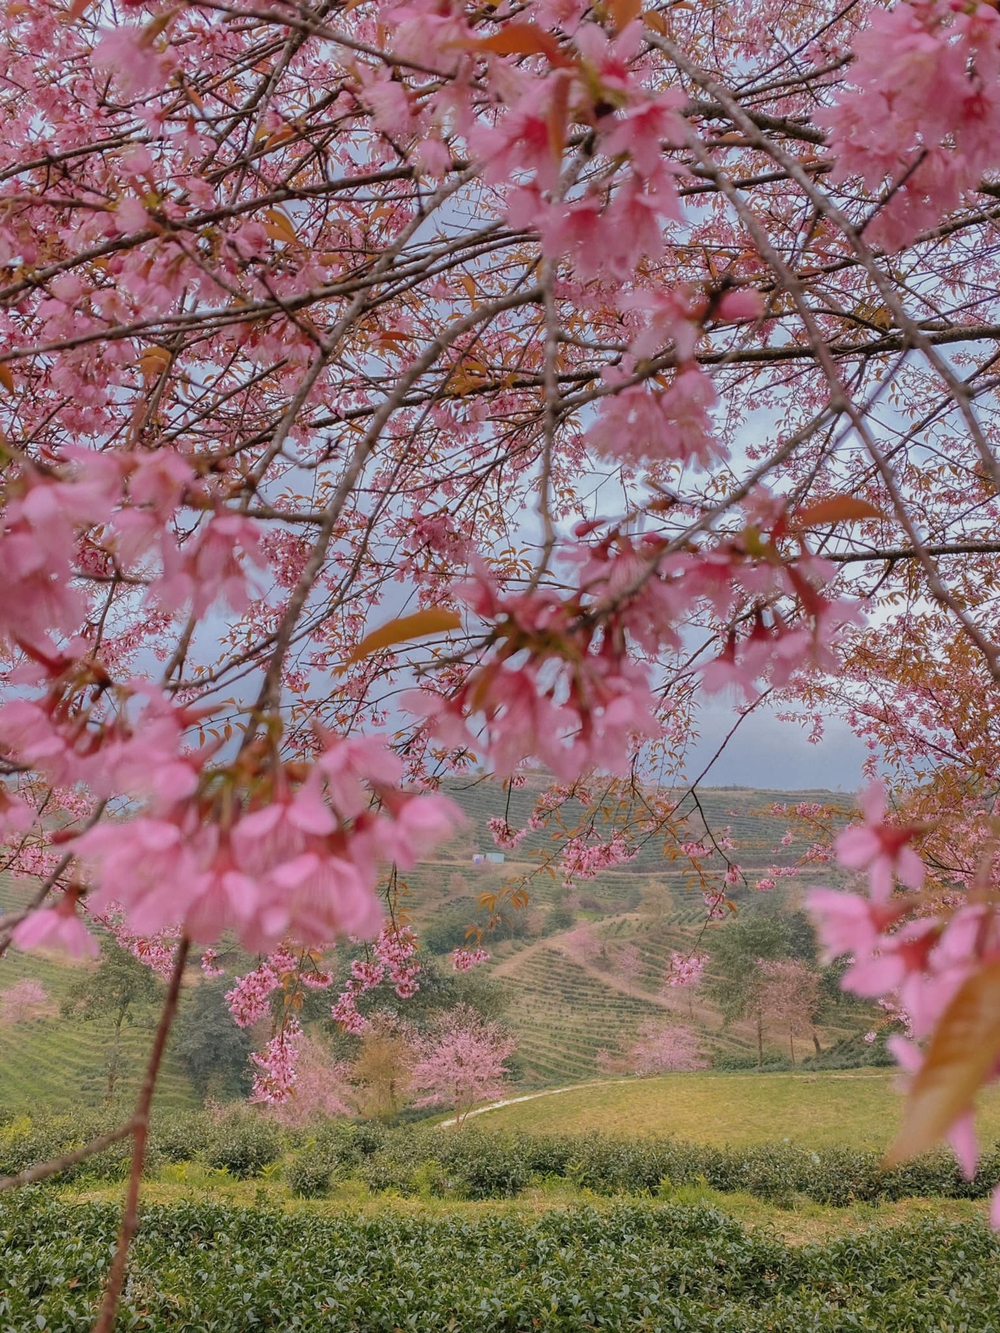 Du lịch Sa Pa mùa này để chiêm ngưỡng hoa mai anh đào nở đẹp như tiên cảnh - Ảnh 4.